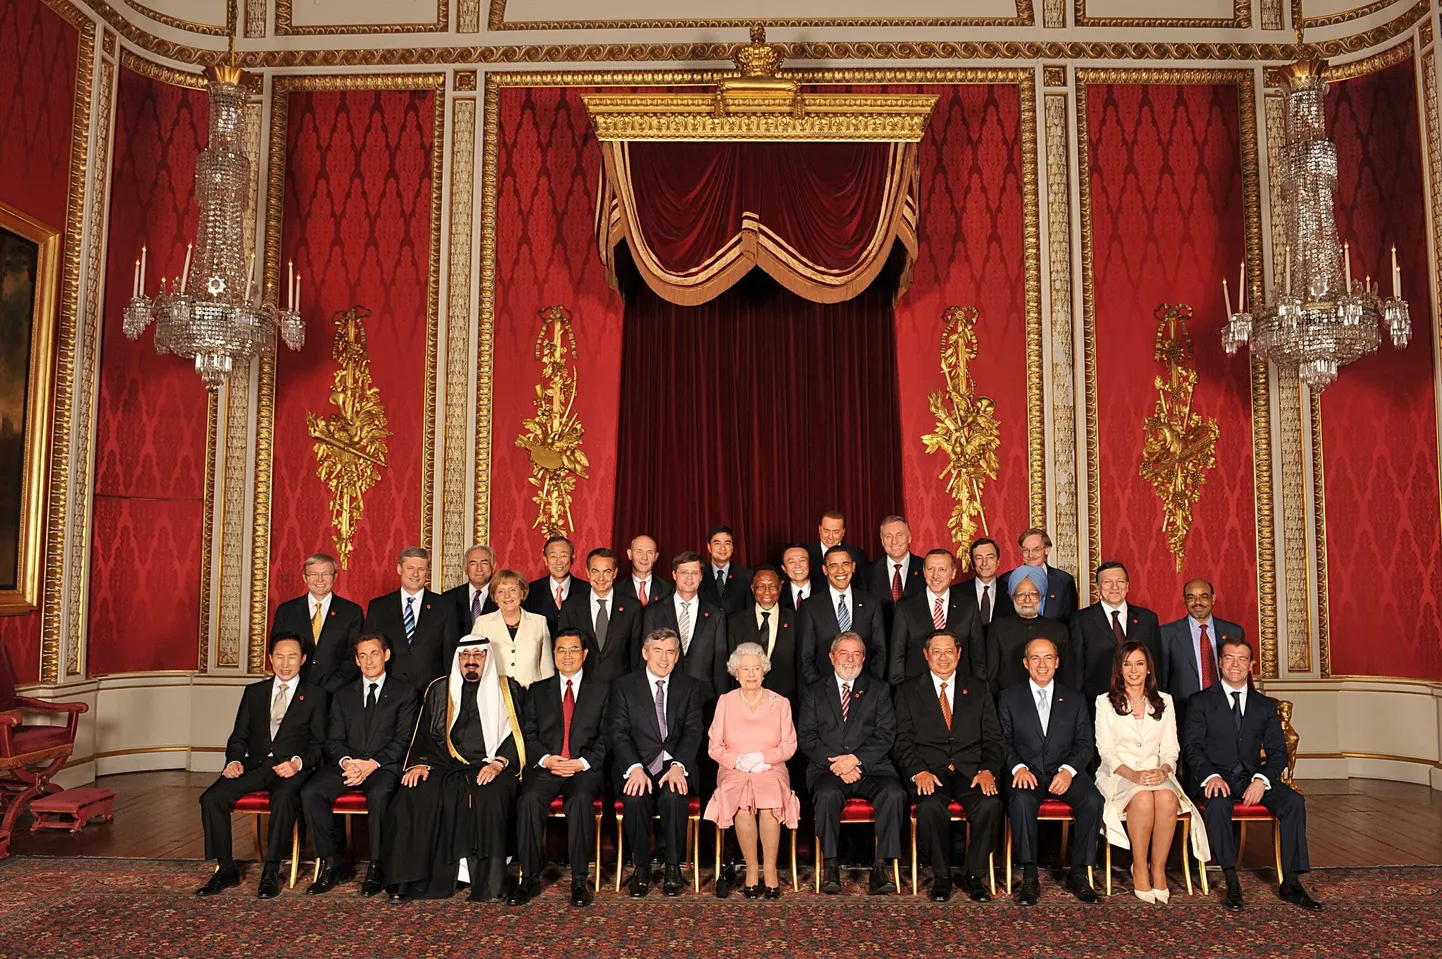 Buckinghami palees G20 juhtide vastuvõtul tehtud ühisfoto